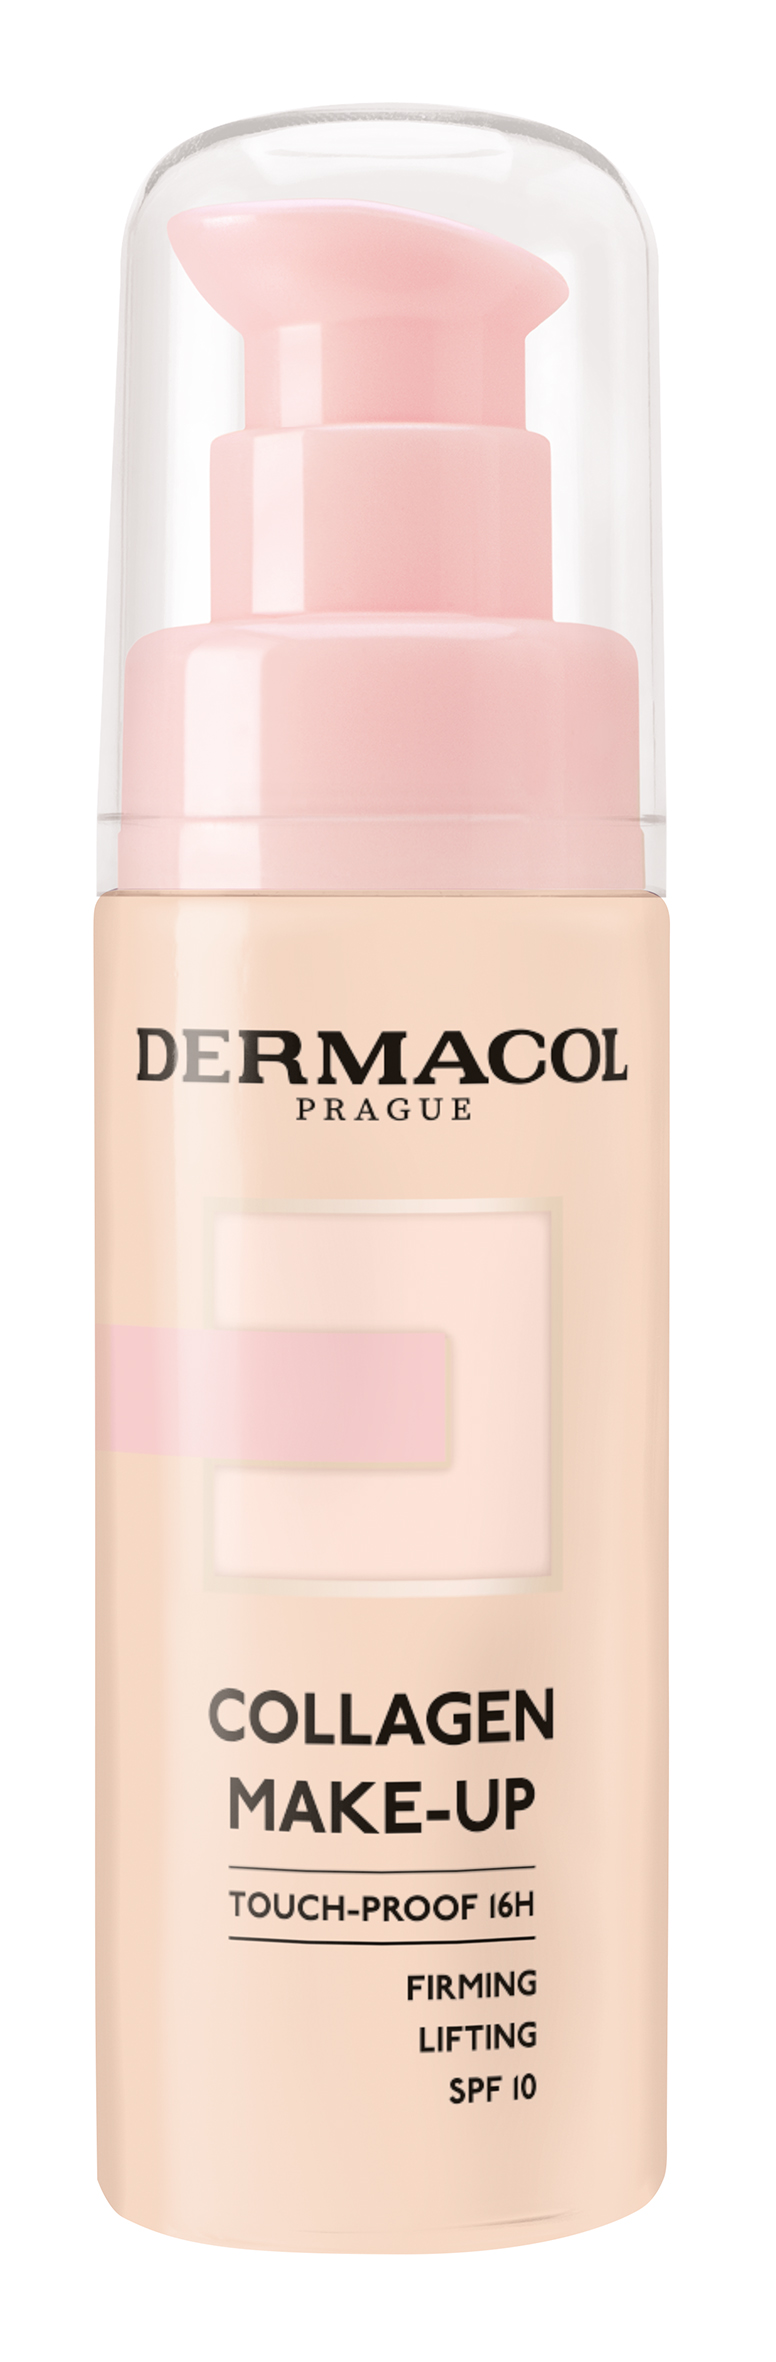 Dermacol Lehký make-up s kolagenem (Collagen Make-Up) 20 ml 4.0 Tan